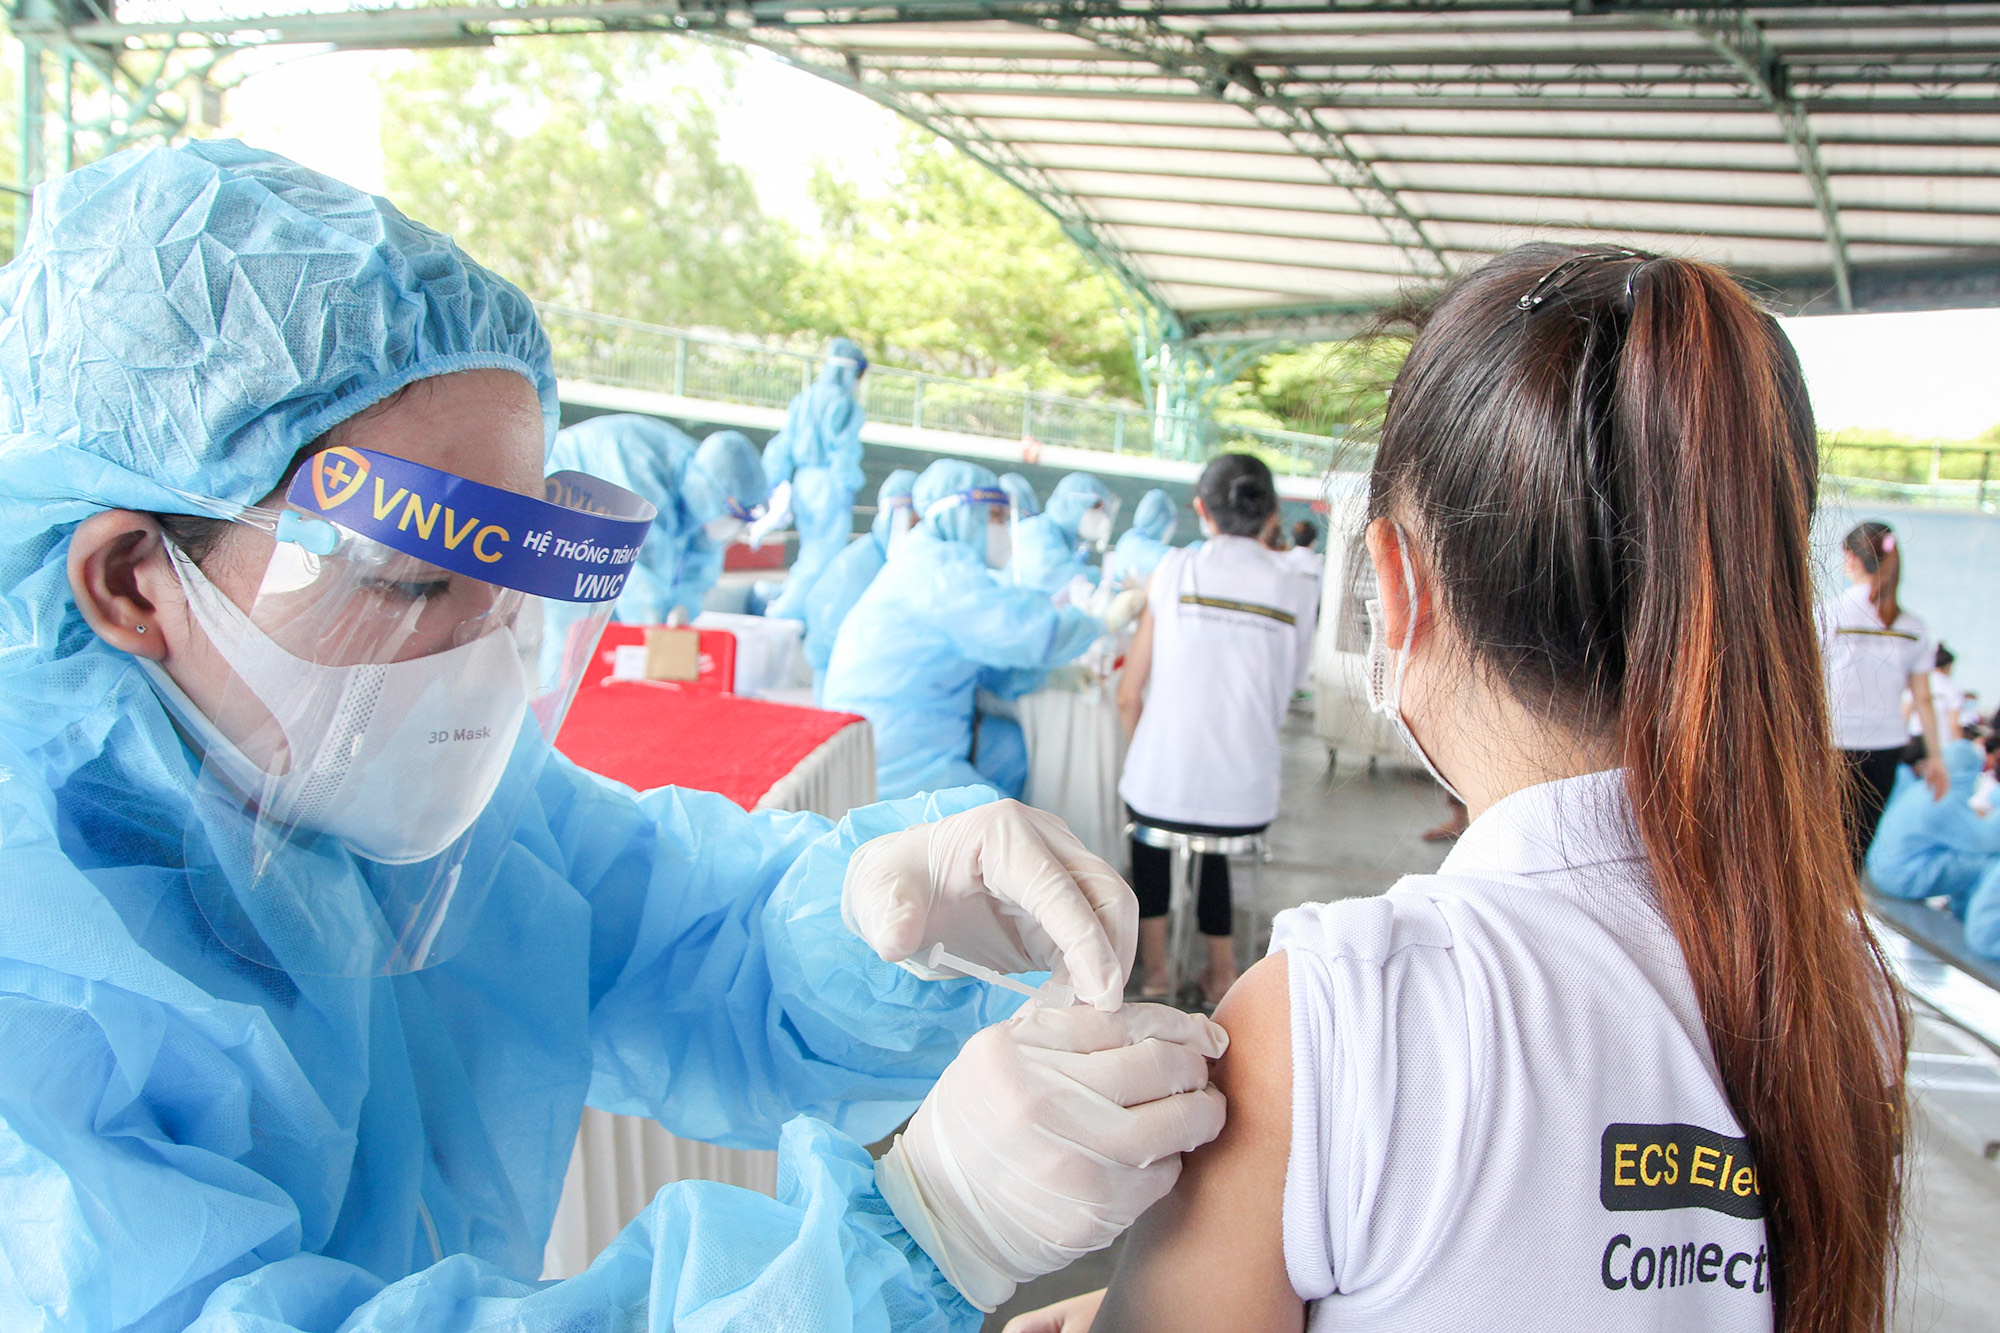               Tính đến thời điểm hiện tại, hơn 18 triệu liều vaccine COVID-19 đã được tiêm trên toàn quốc. Ảnh: VGP/Hiền Minh              